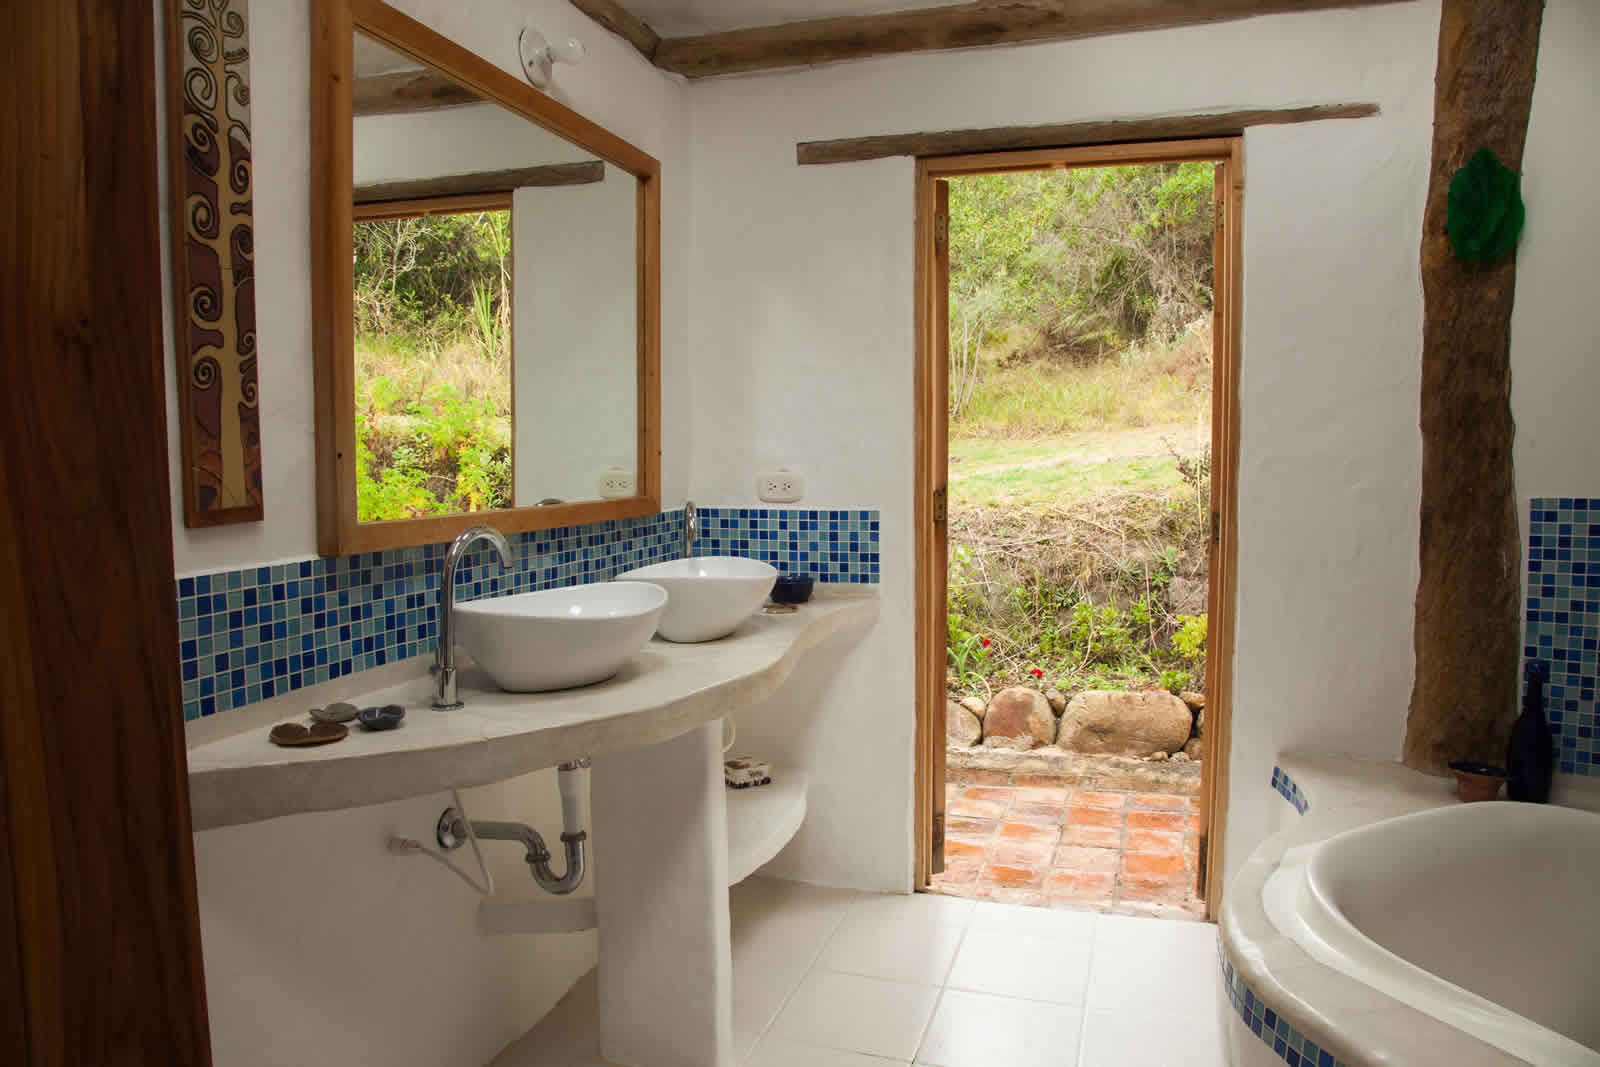 Alquiler cabaña La Colorada 2 en Villa de Leyva - Baño principal